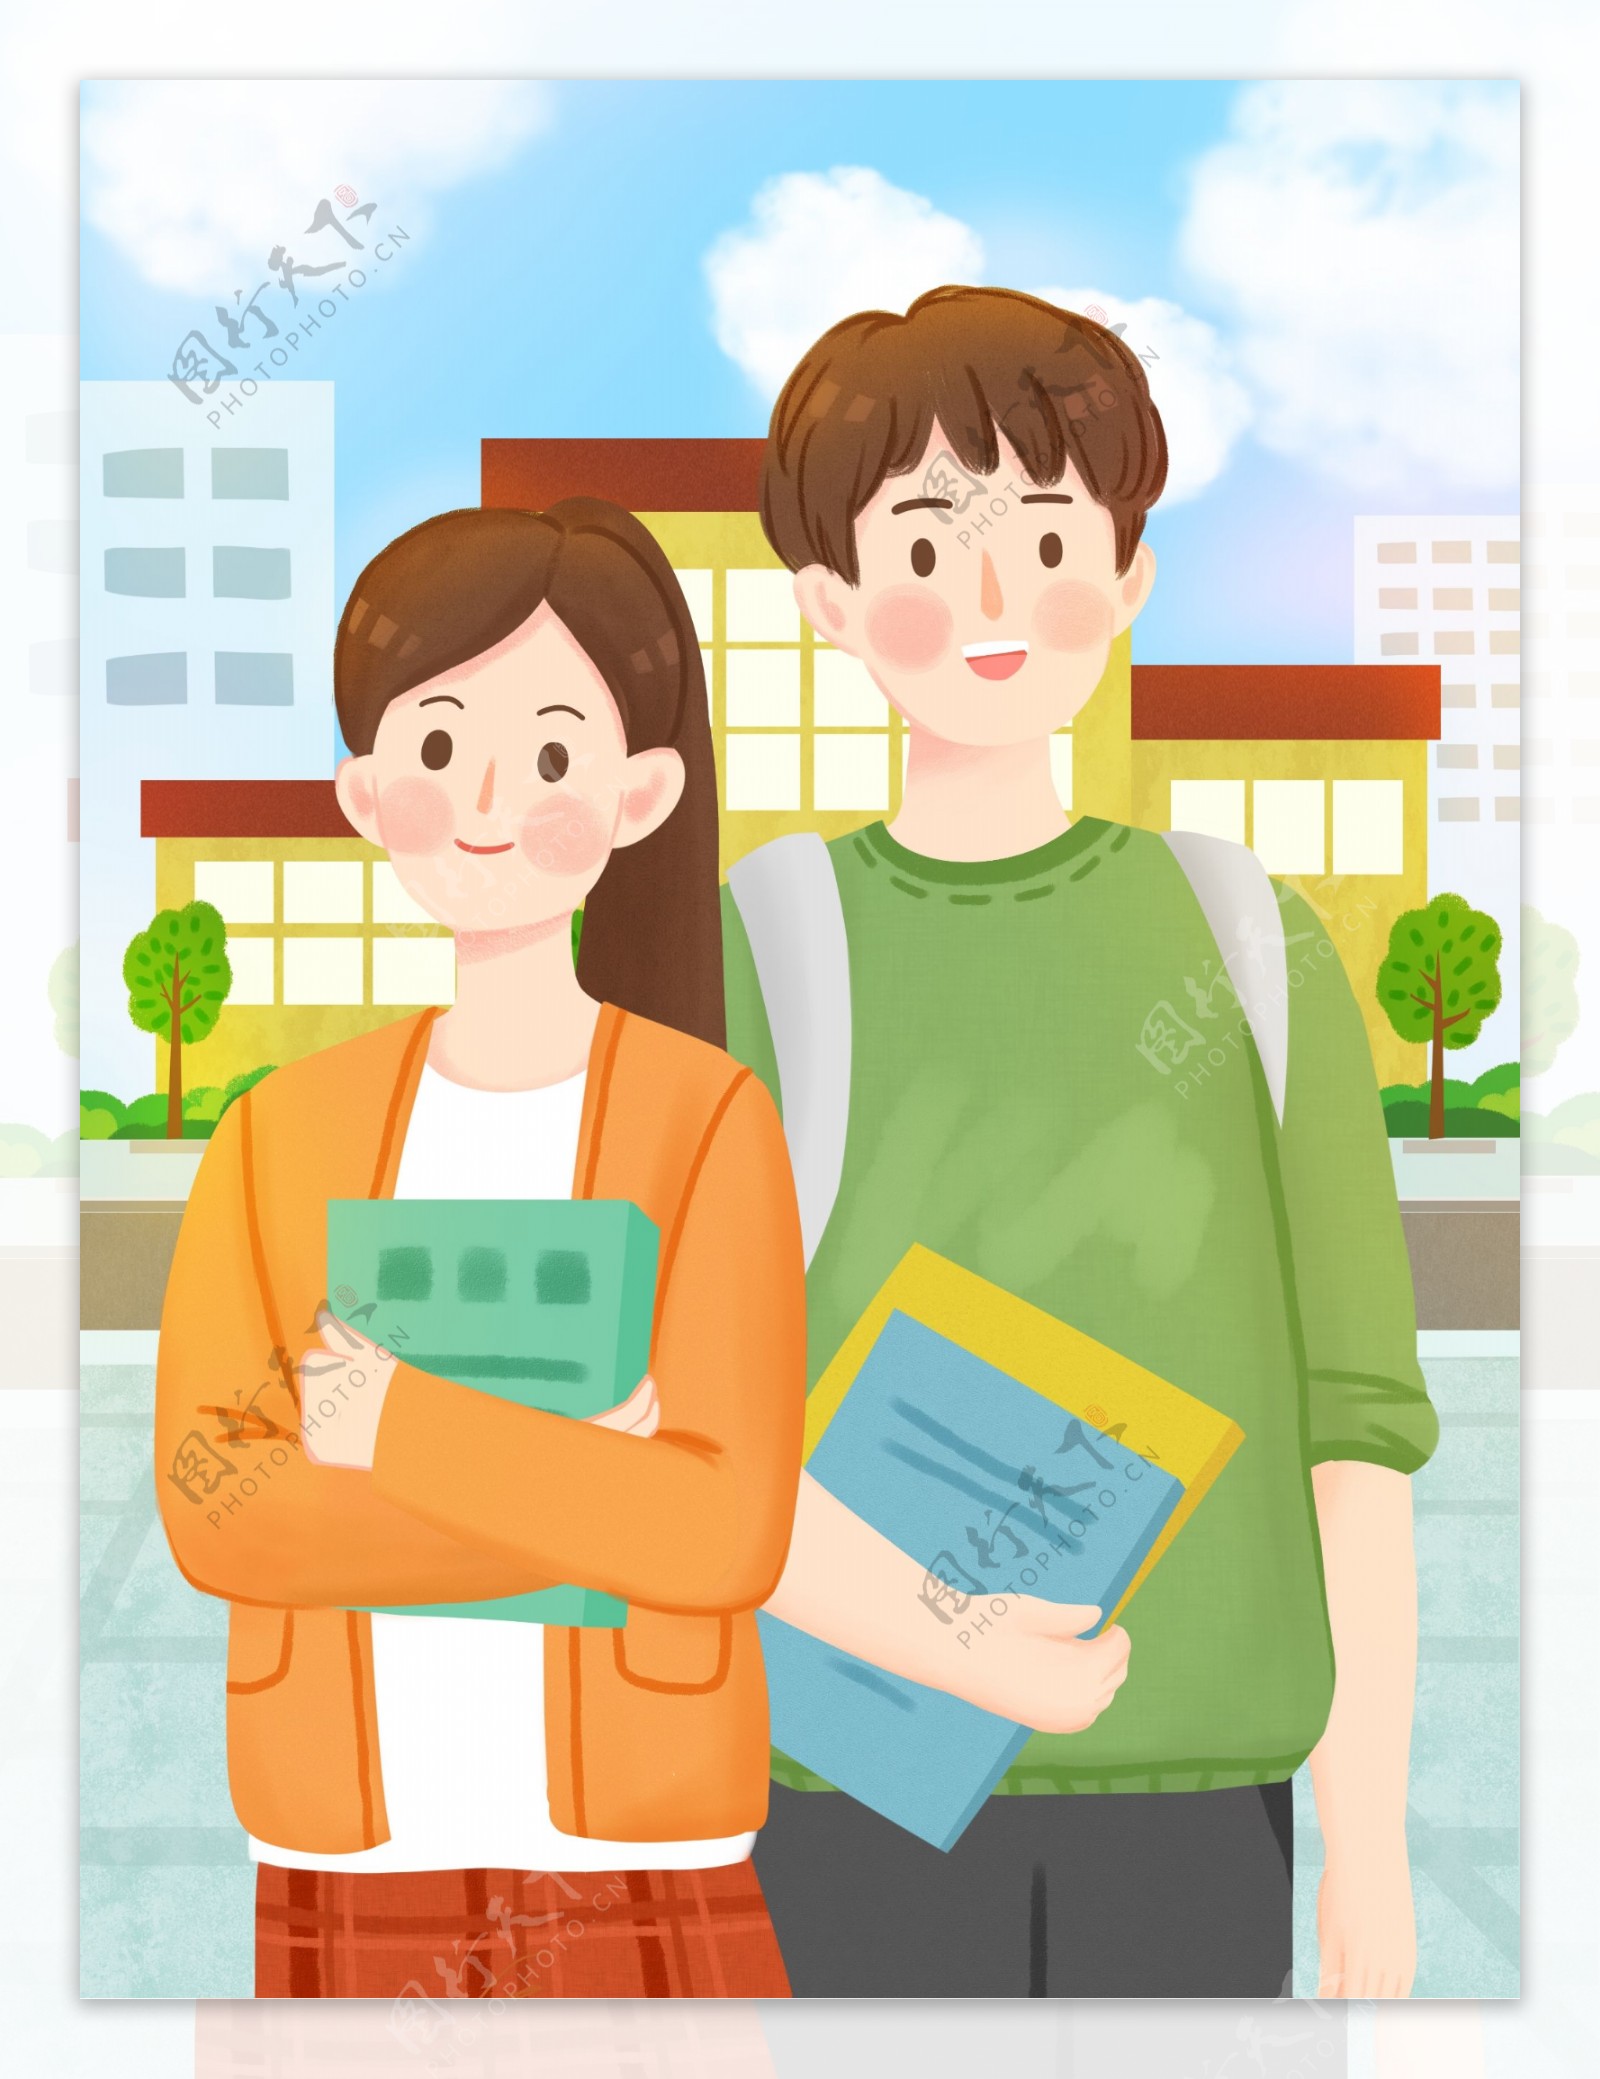 蓝褐色青春校园插画手绘青年节节日分享中文海报 - 模板 - Canva可画